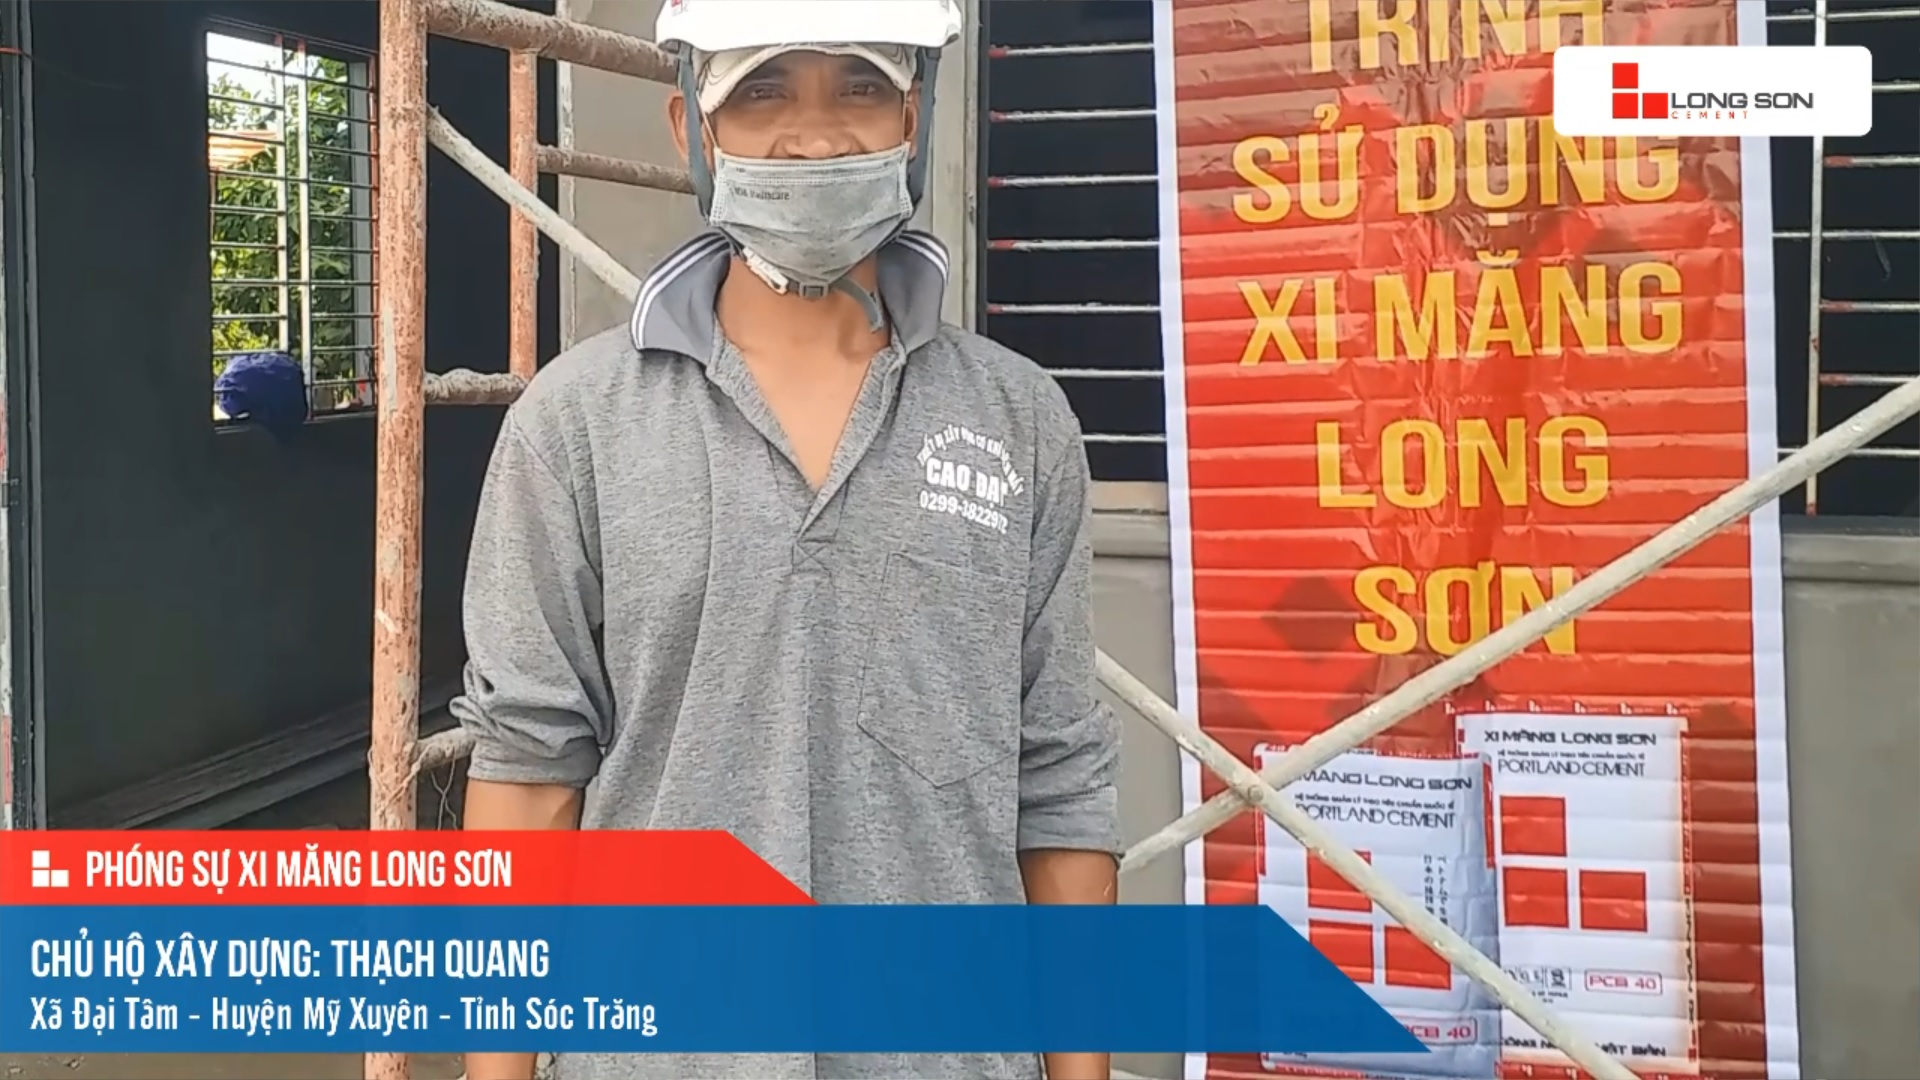 Phóng sự công trình sử dụng xi măng Long Sơn tại Sóc Trăng ngày 10/07/2021